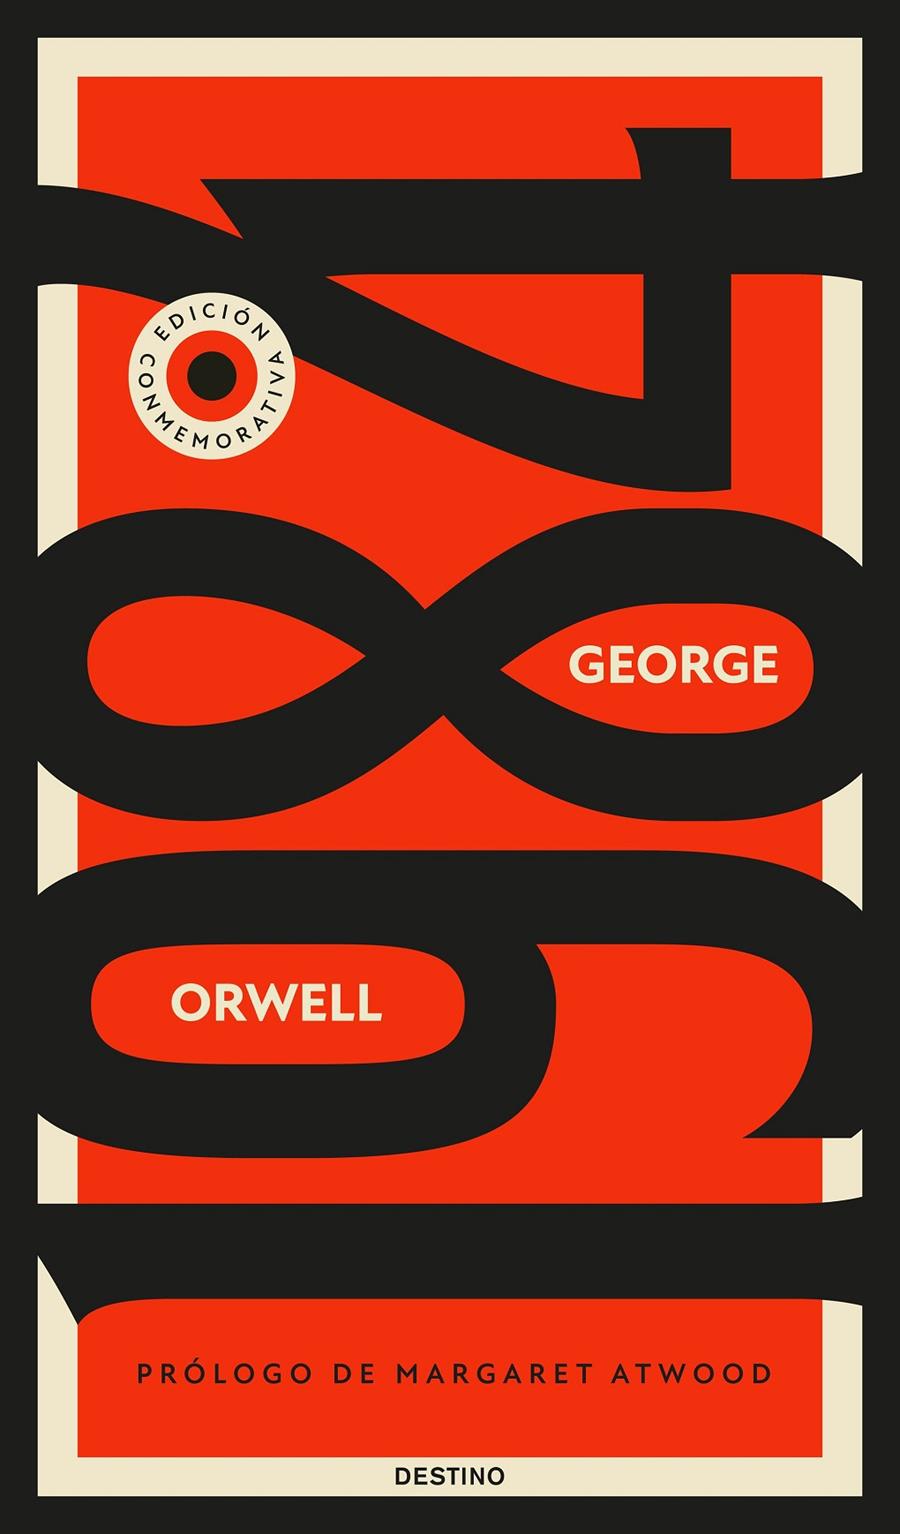 1984 | Orwell, George | Cooperativa autogestionària